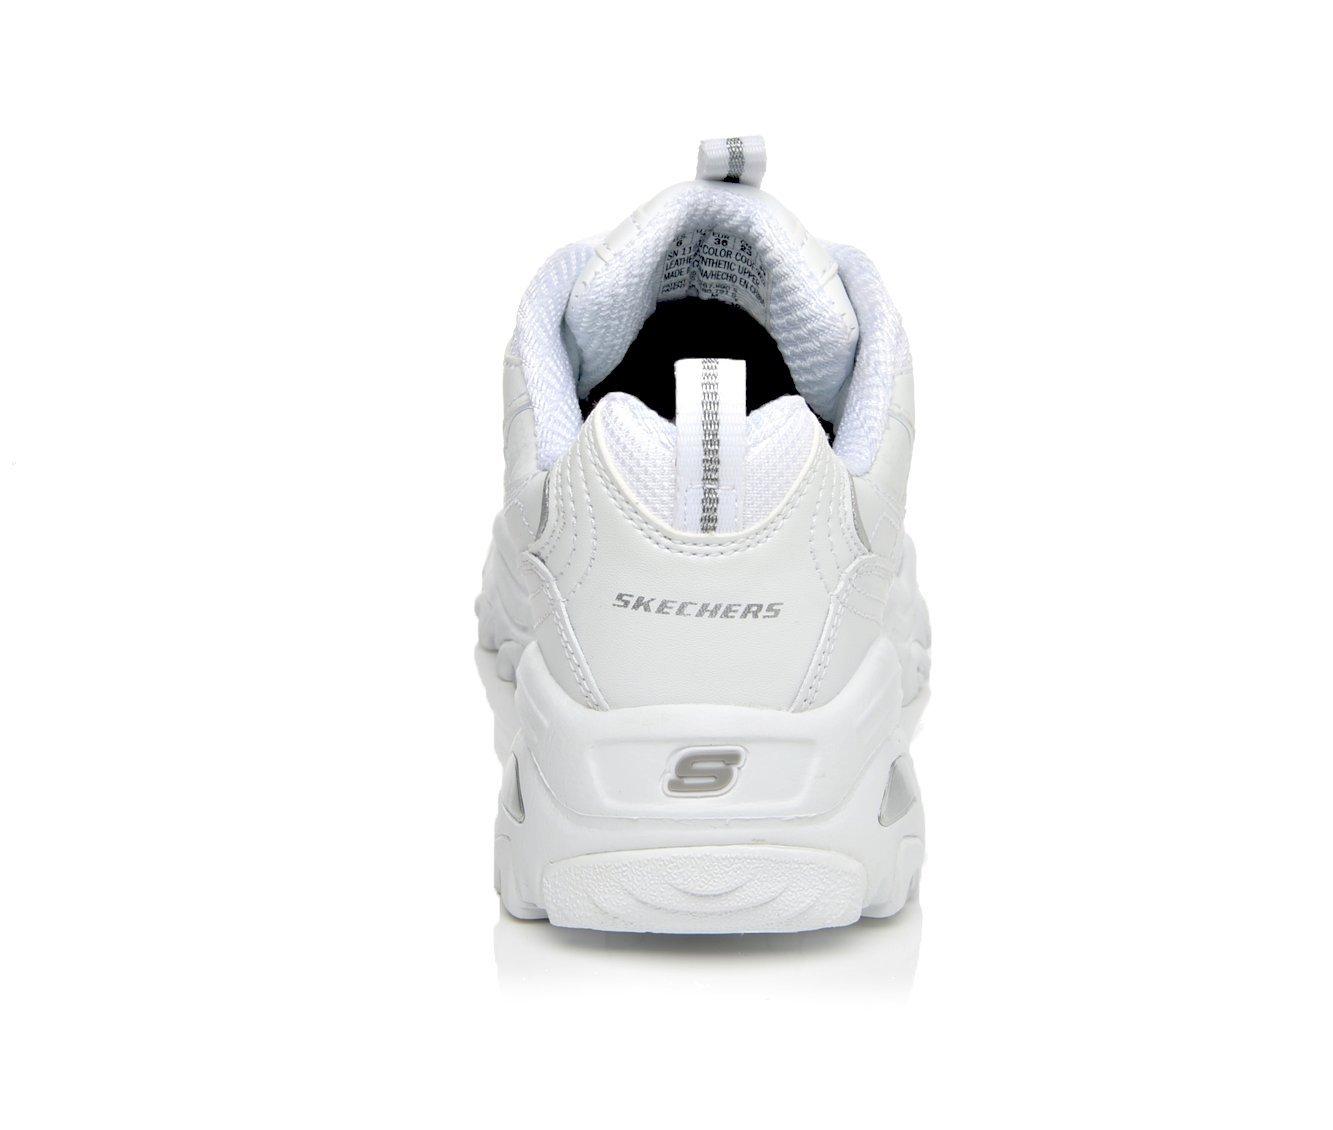 WMNS) Skechers D'lites 1.0 Fashion Sneakers Black 149048-BKMT - KICKS CREW